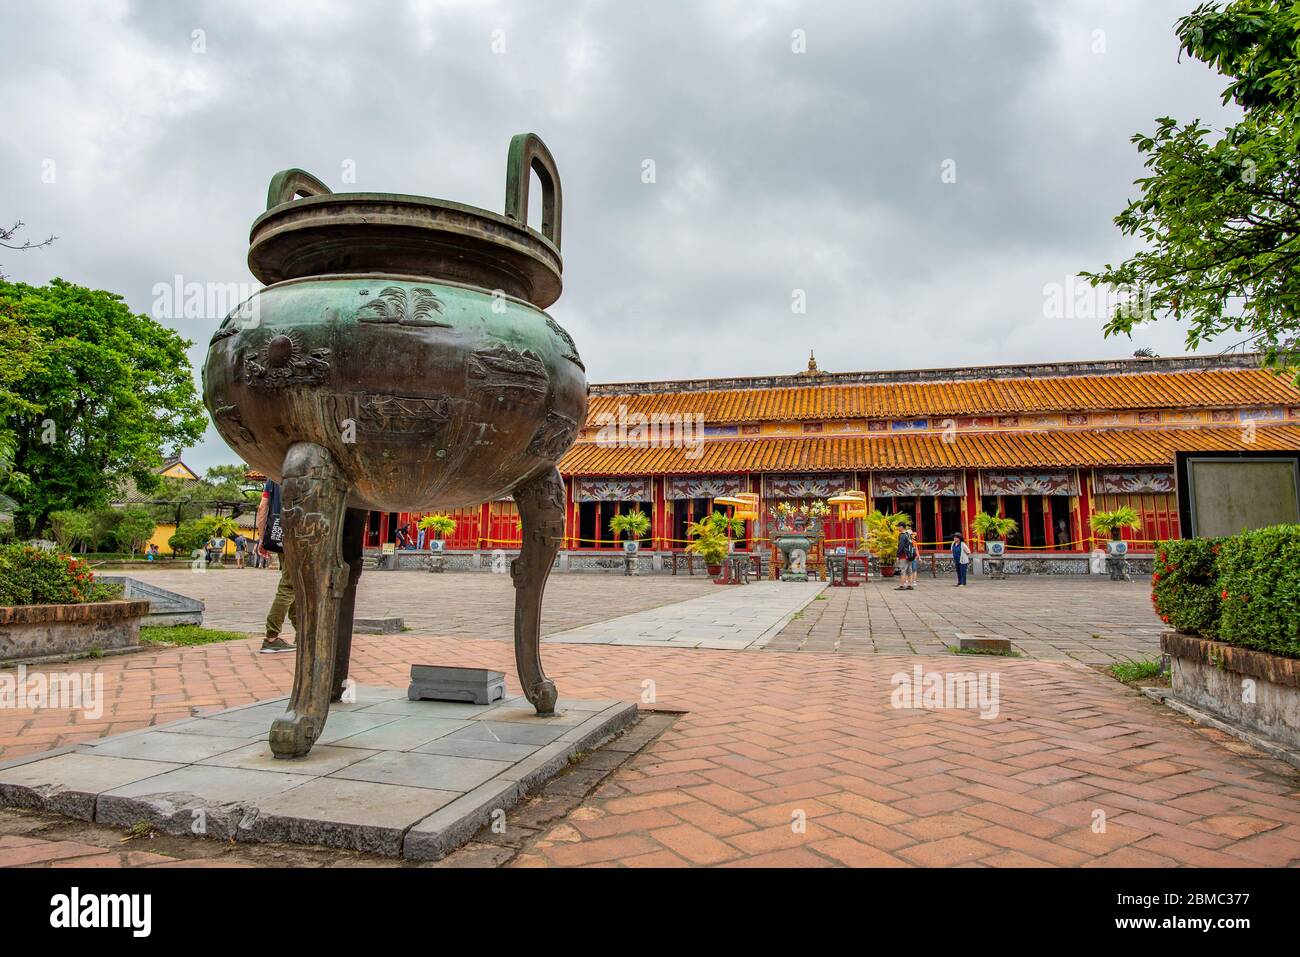 Hue, Vietnam - 15 aprile 2018: Una delle famose urne (caldron) della cittadella di Hue con pochissimi turisti e un cielo coperto Foto Stock